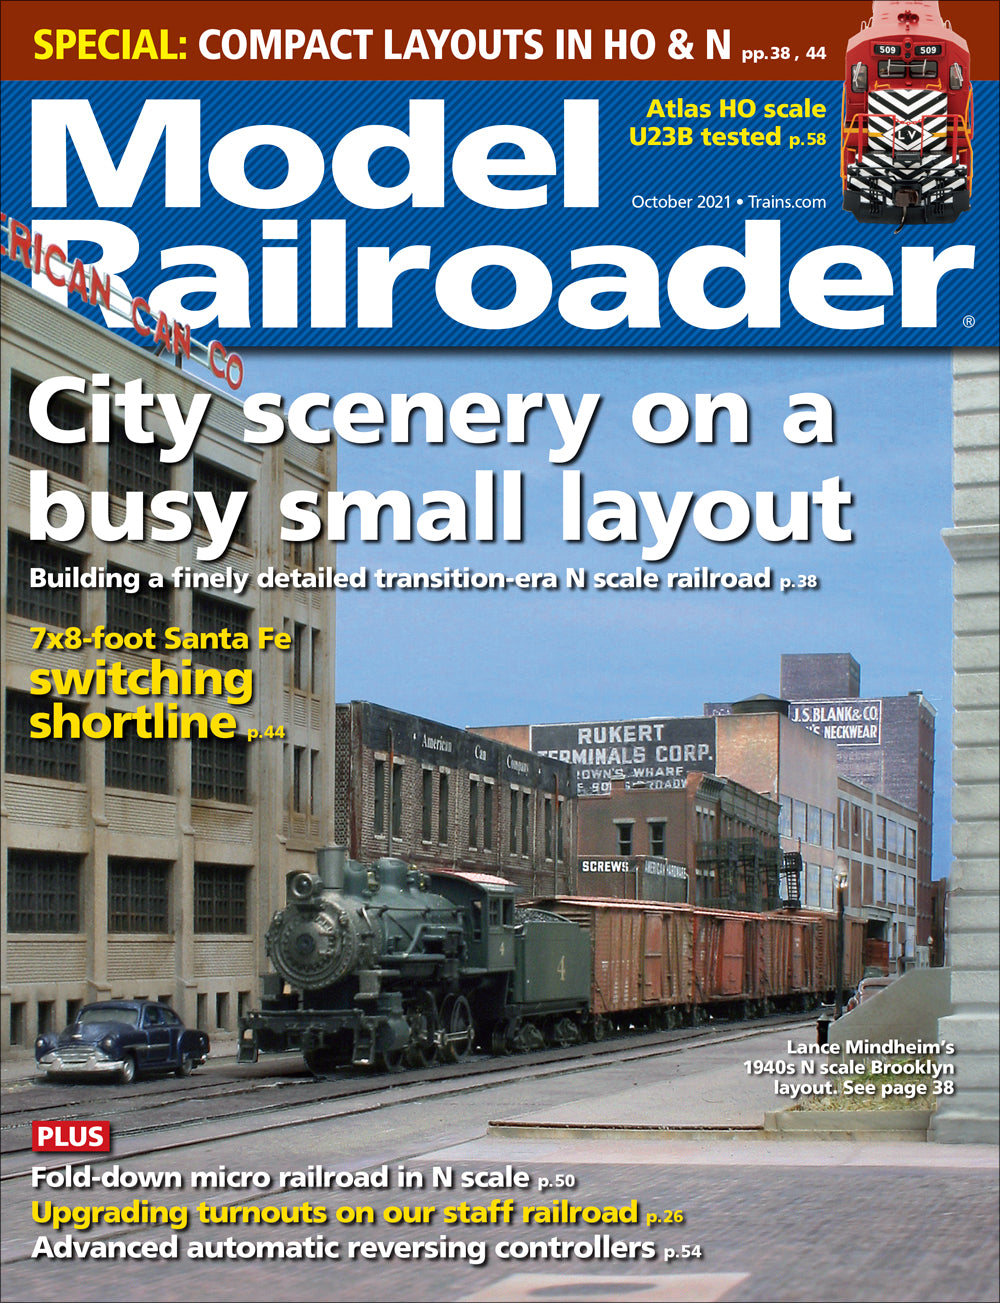 Model Railroader - Magazine - Vol. 88 - Issue 10 - October 2021